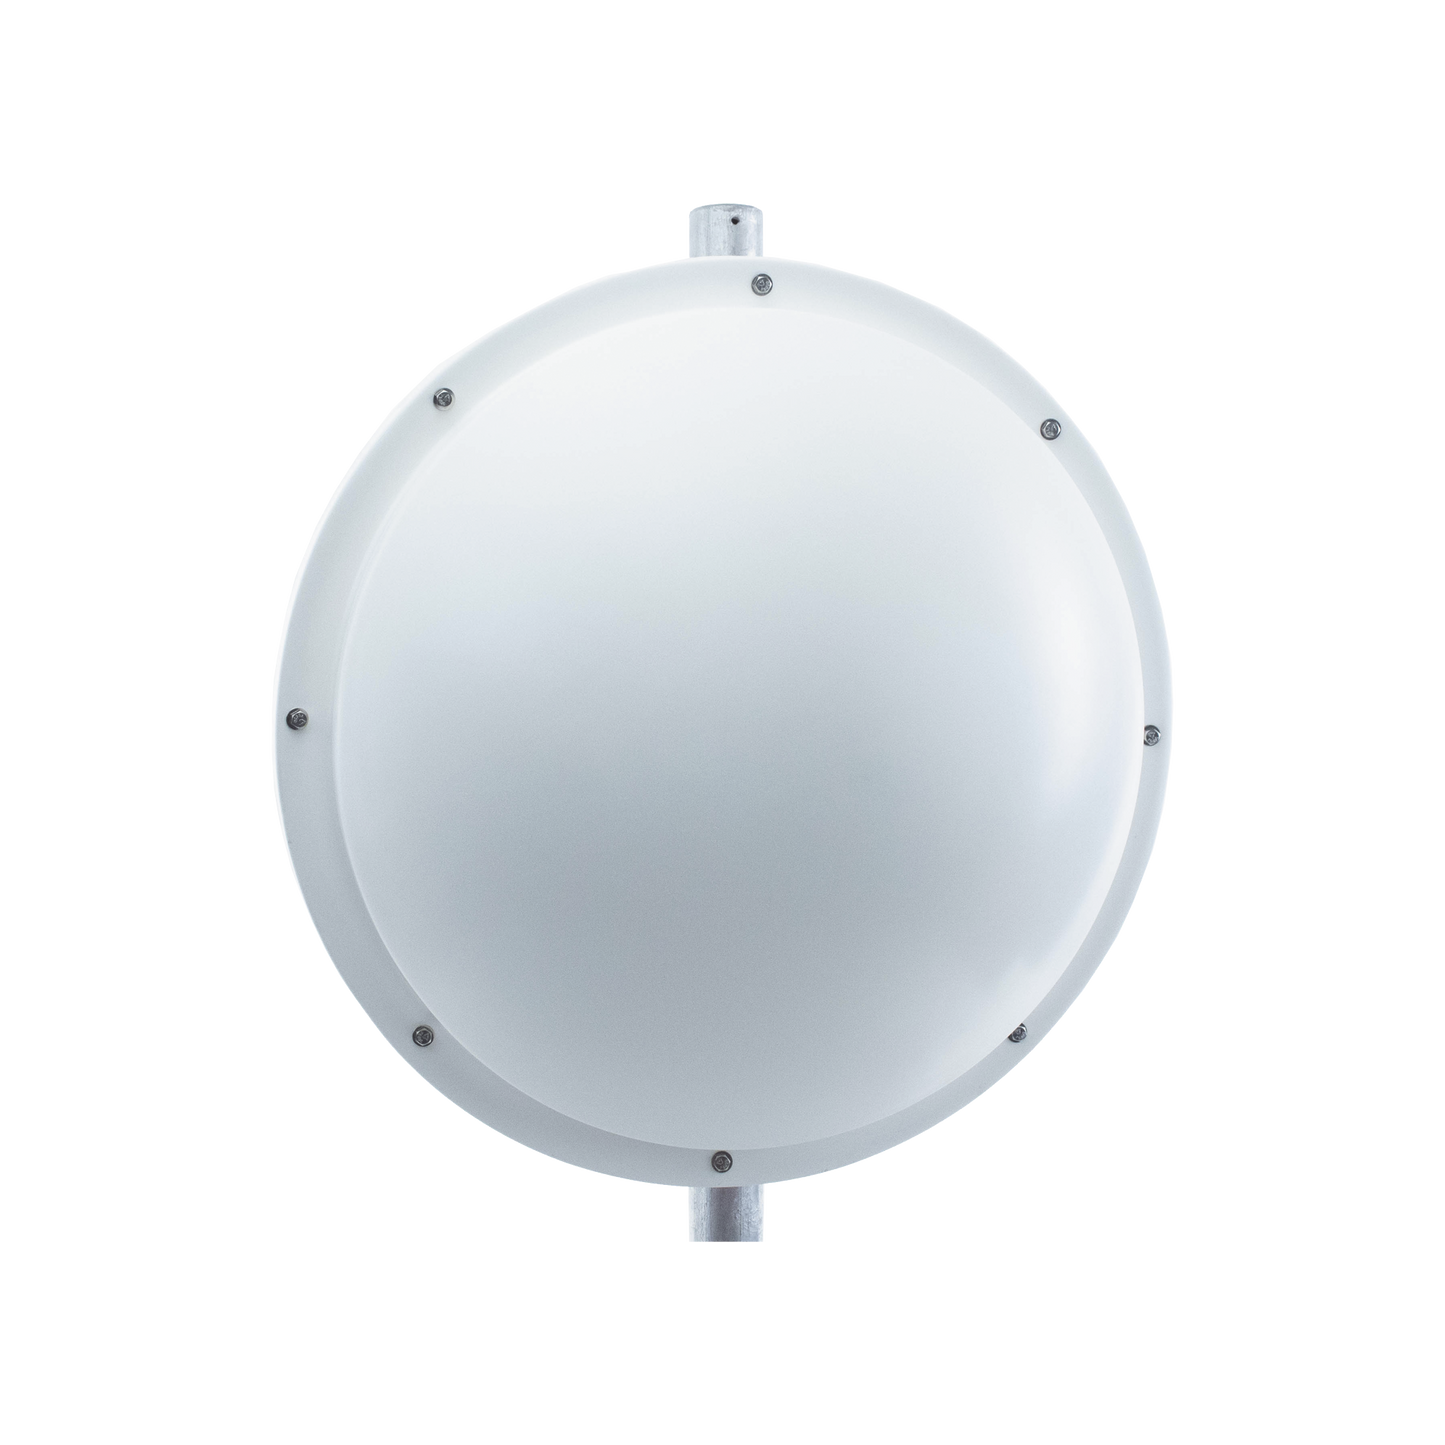 Antena altamente Direccional / 3 ft / 4.9-6.4 GHz / Diseñada para ambientes salinos / Ganancia 34 dBi / SLANT de 45 ° y 90 ° / Incluye radomo, jumper y montaje de acero inoxidable.